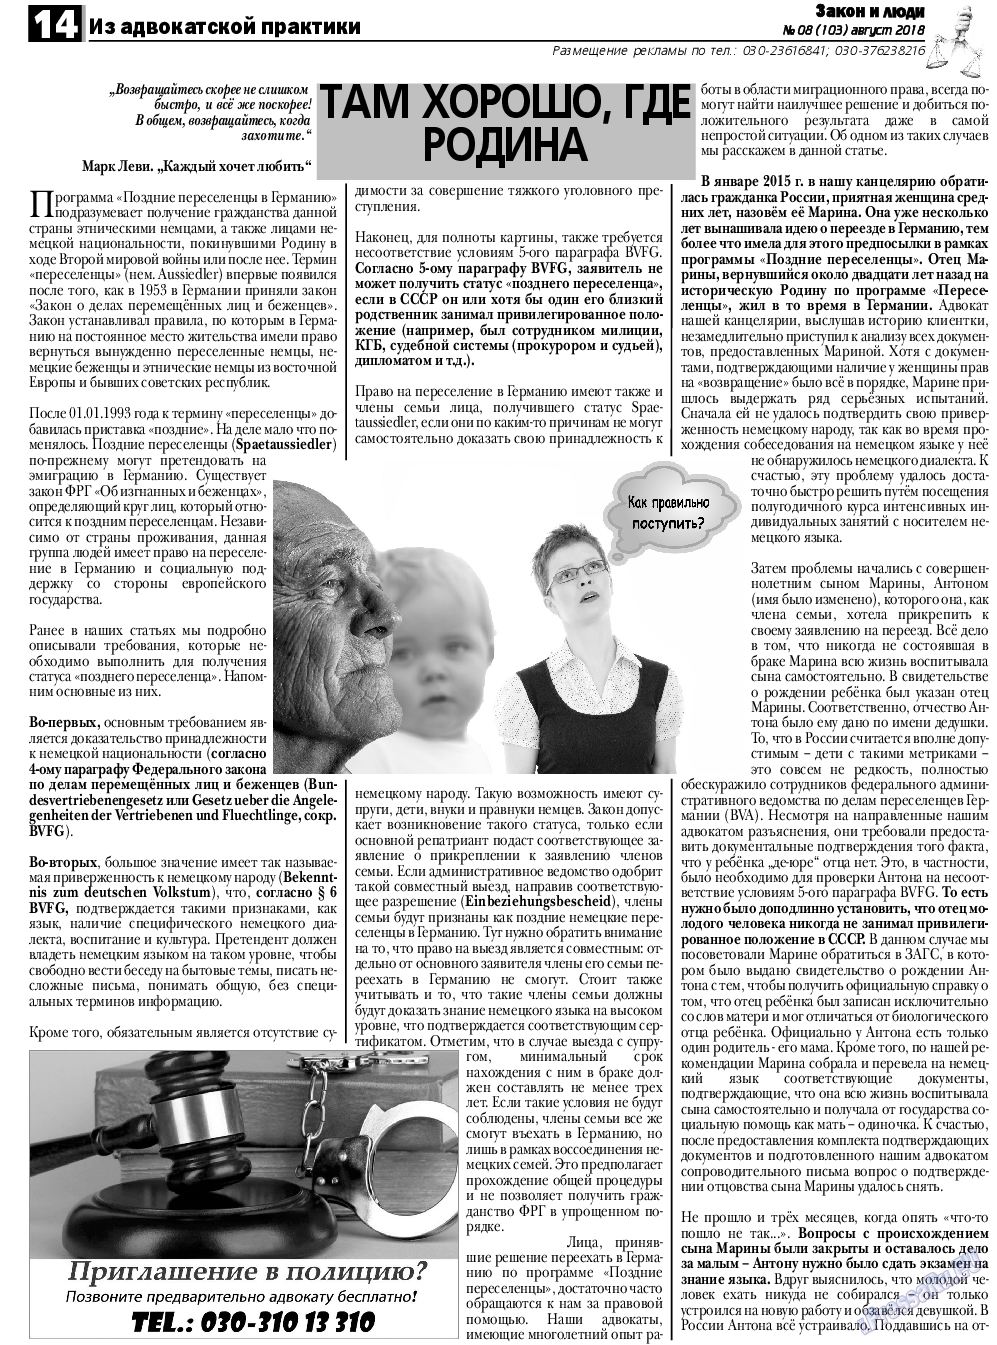 Закон и люди, газета. 2018 №8 стр.14